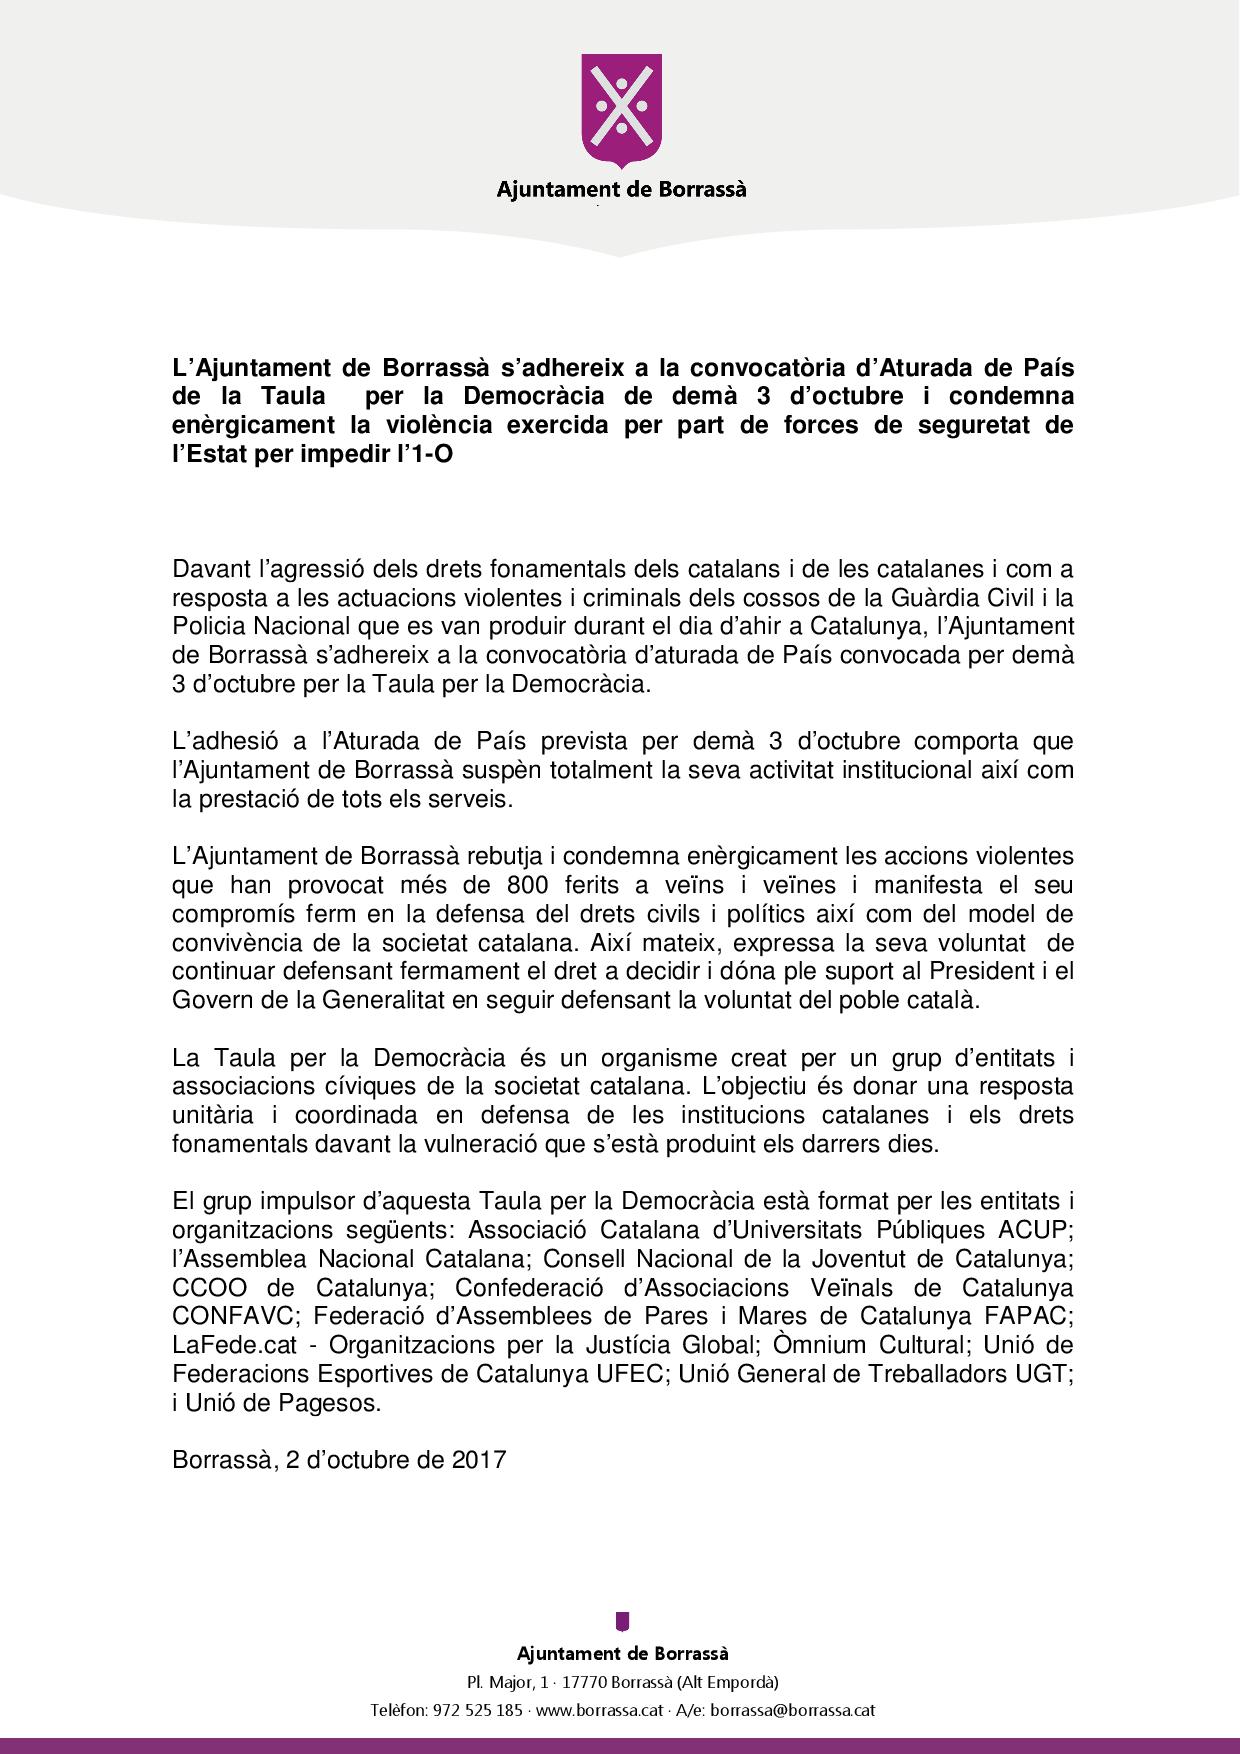 L'Ajuntament de Borrassà s'adhereix a la convocatòria d'Aturada de País de la Taula per la Democràcia de demà, 3 d'octubre, i condemna enèrgicament la violència exercida per part de forces de seguretat de l'Estat per impedir l'1-O